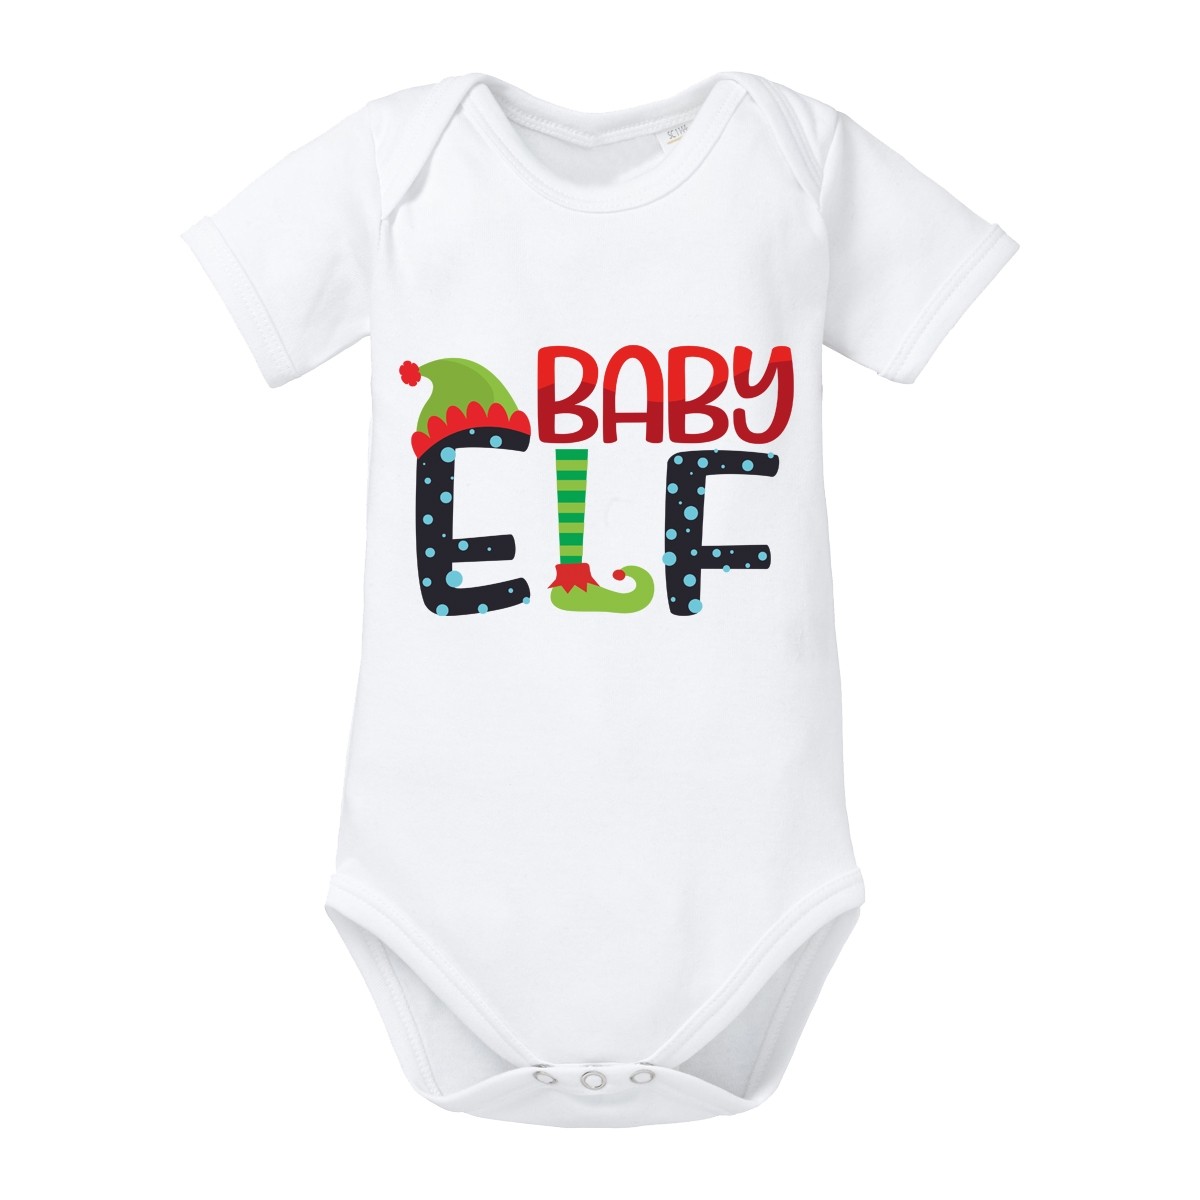 Babybody - Modell: Baby Elf.